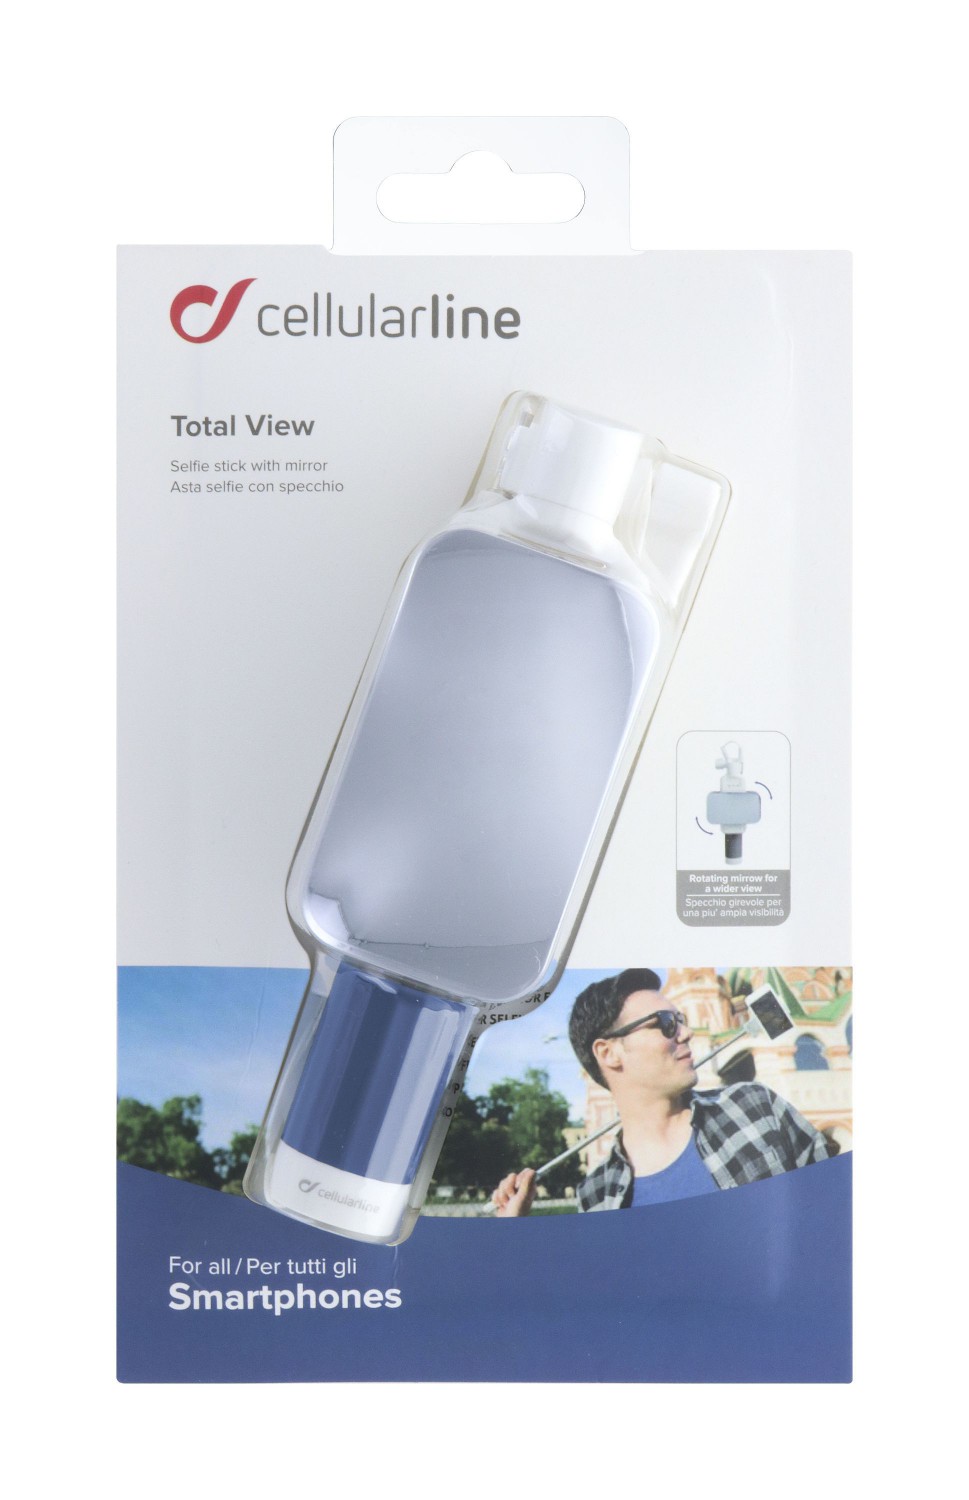 Selfie tyč se zrcátkem CellularLine Total View, modrá